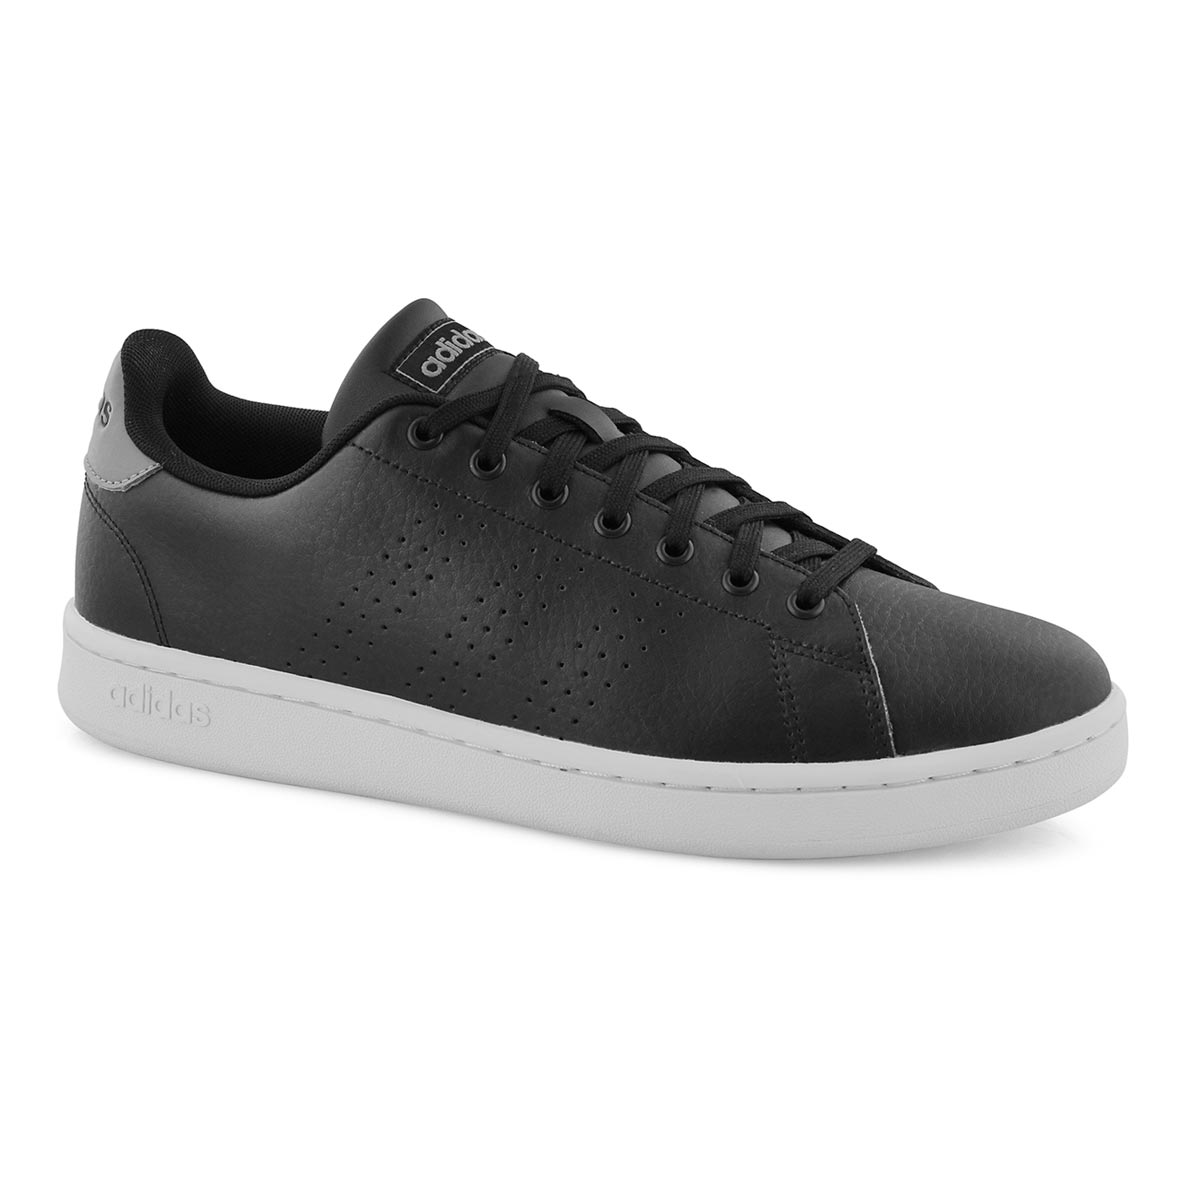 ADVANTAGE black/ white sneakers 